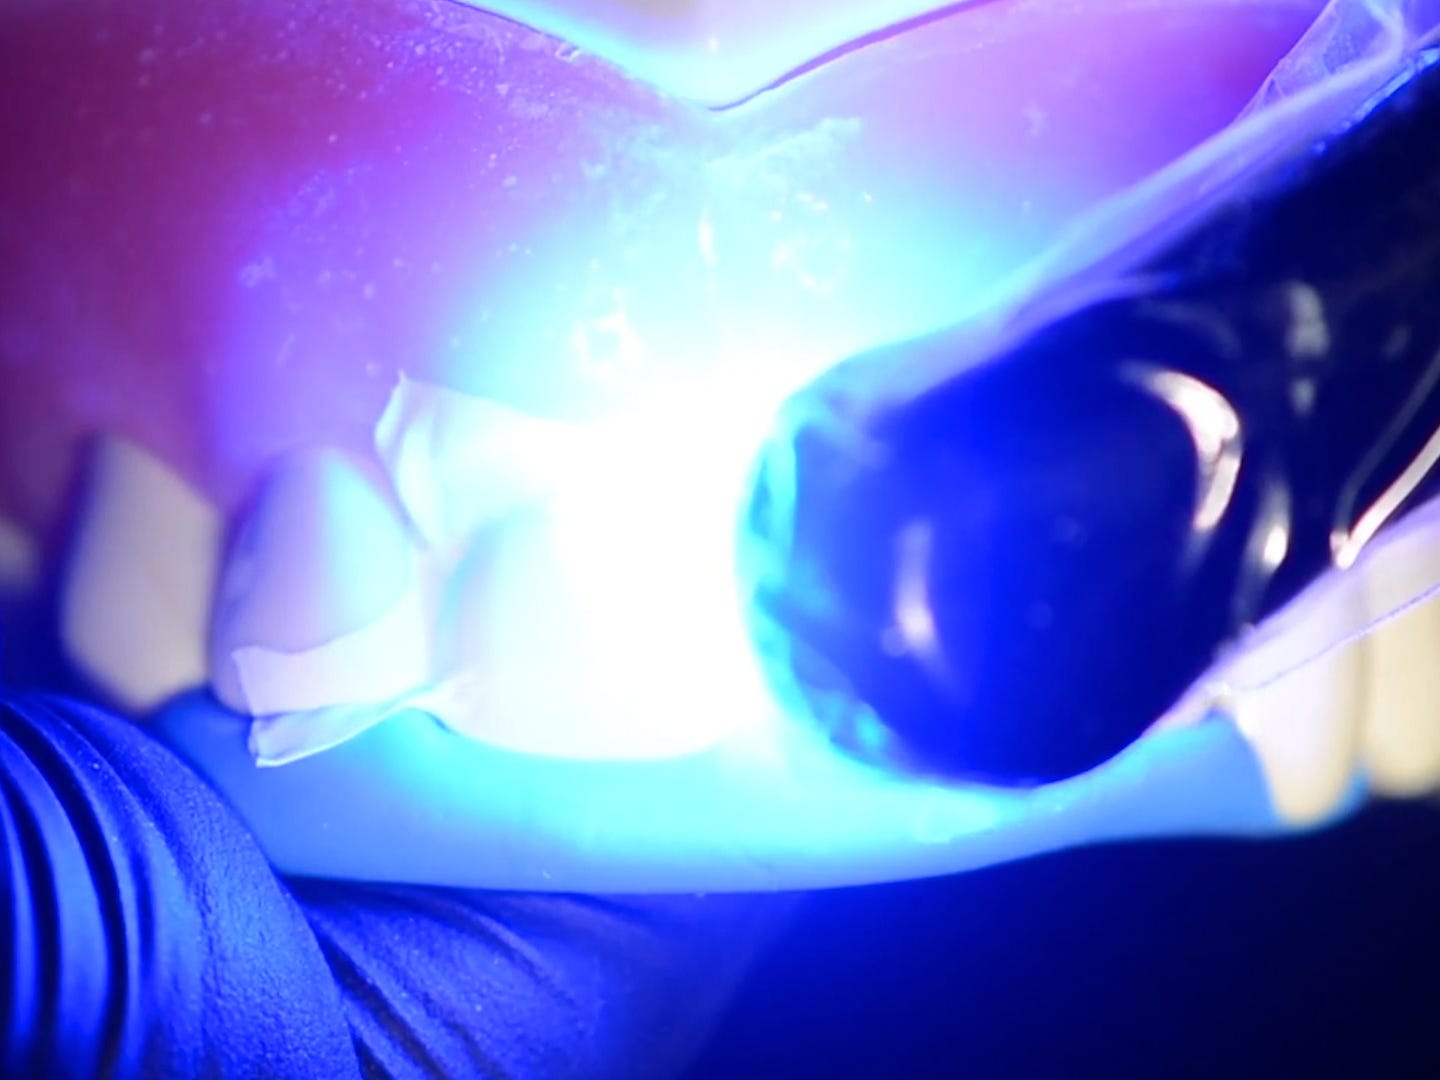 Ein Stab, der gegen den Zahn gehalten wird, gibt intensives blaues Licht ab.